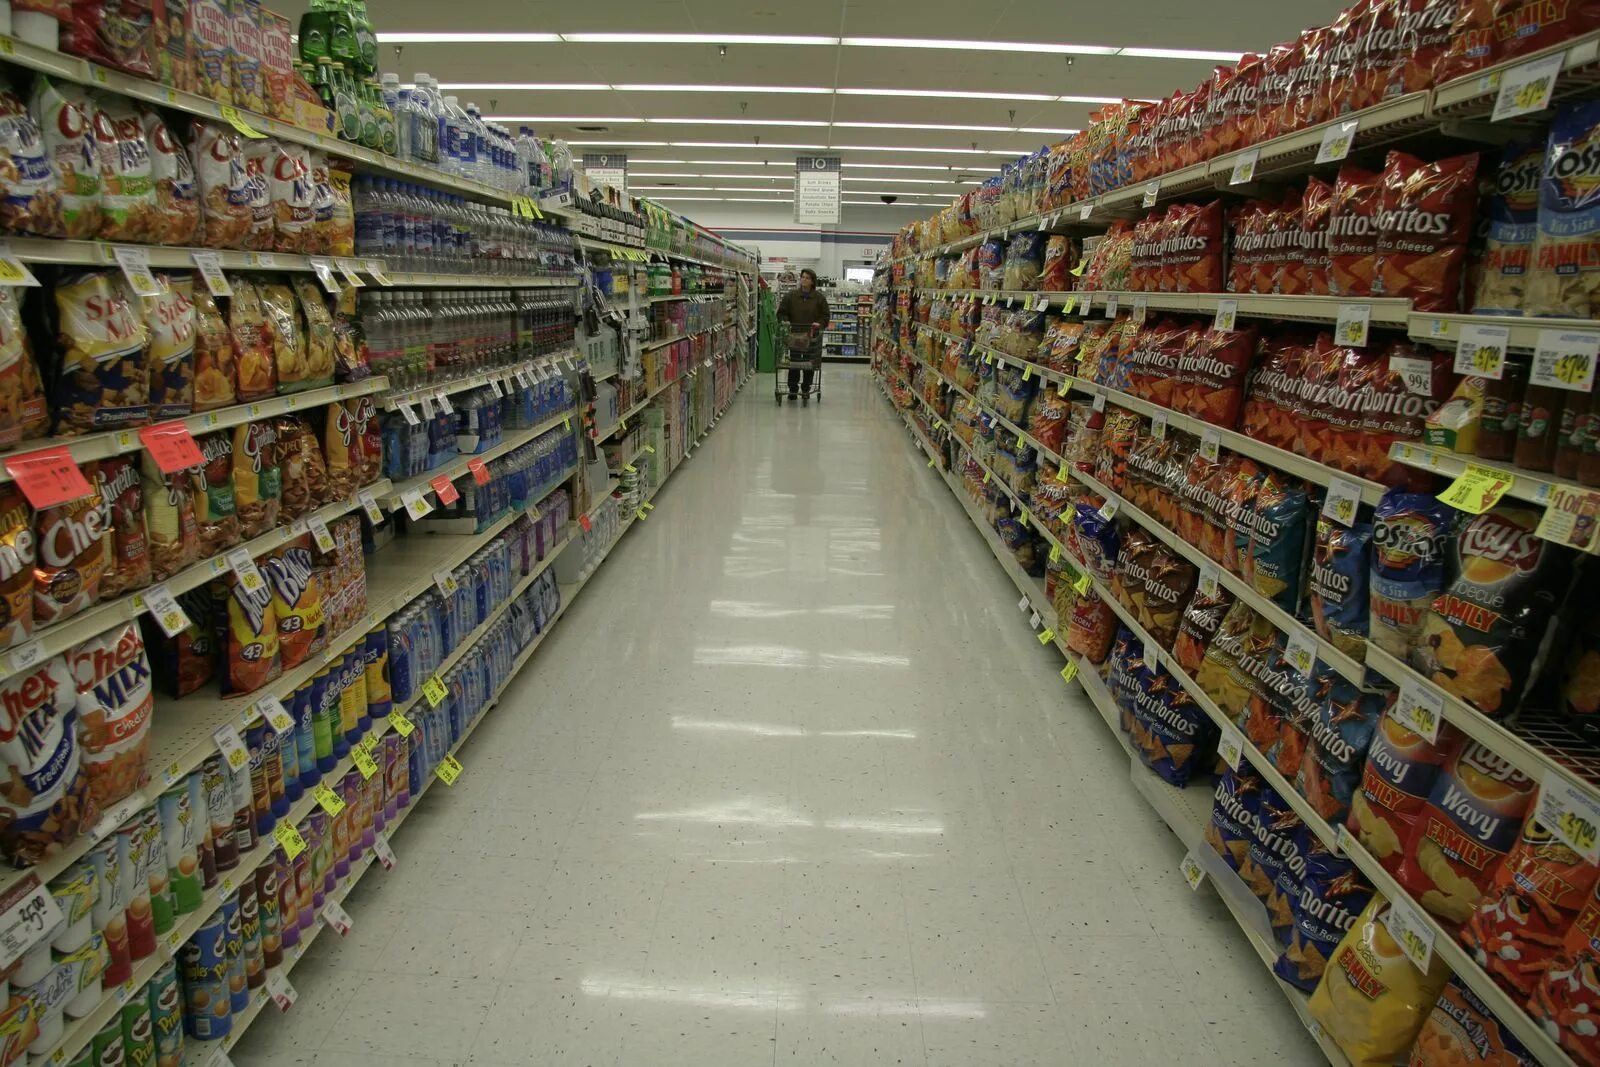 Grocery aisle продукты. Бакалея ассортимент товаров. Супермаркет ряды. Supermarket aisle.